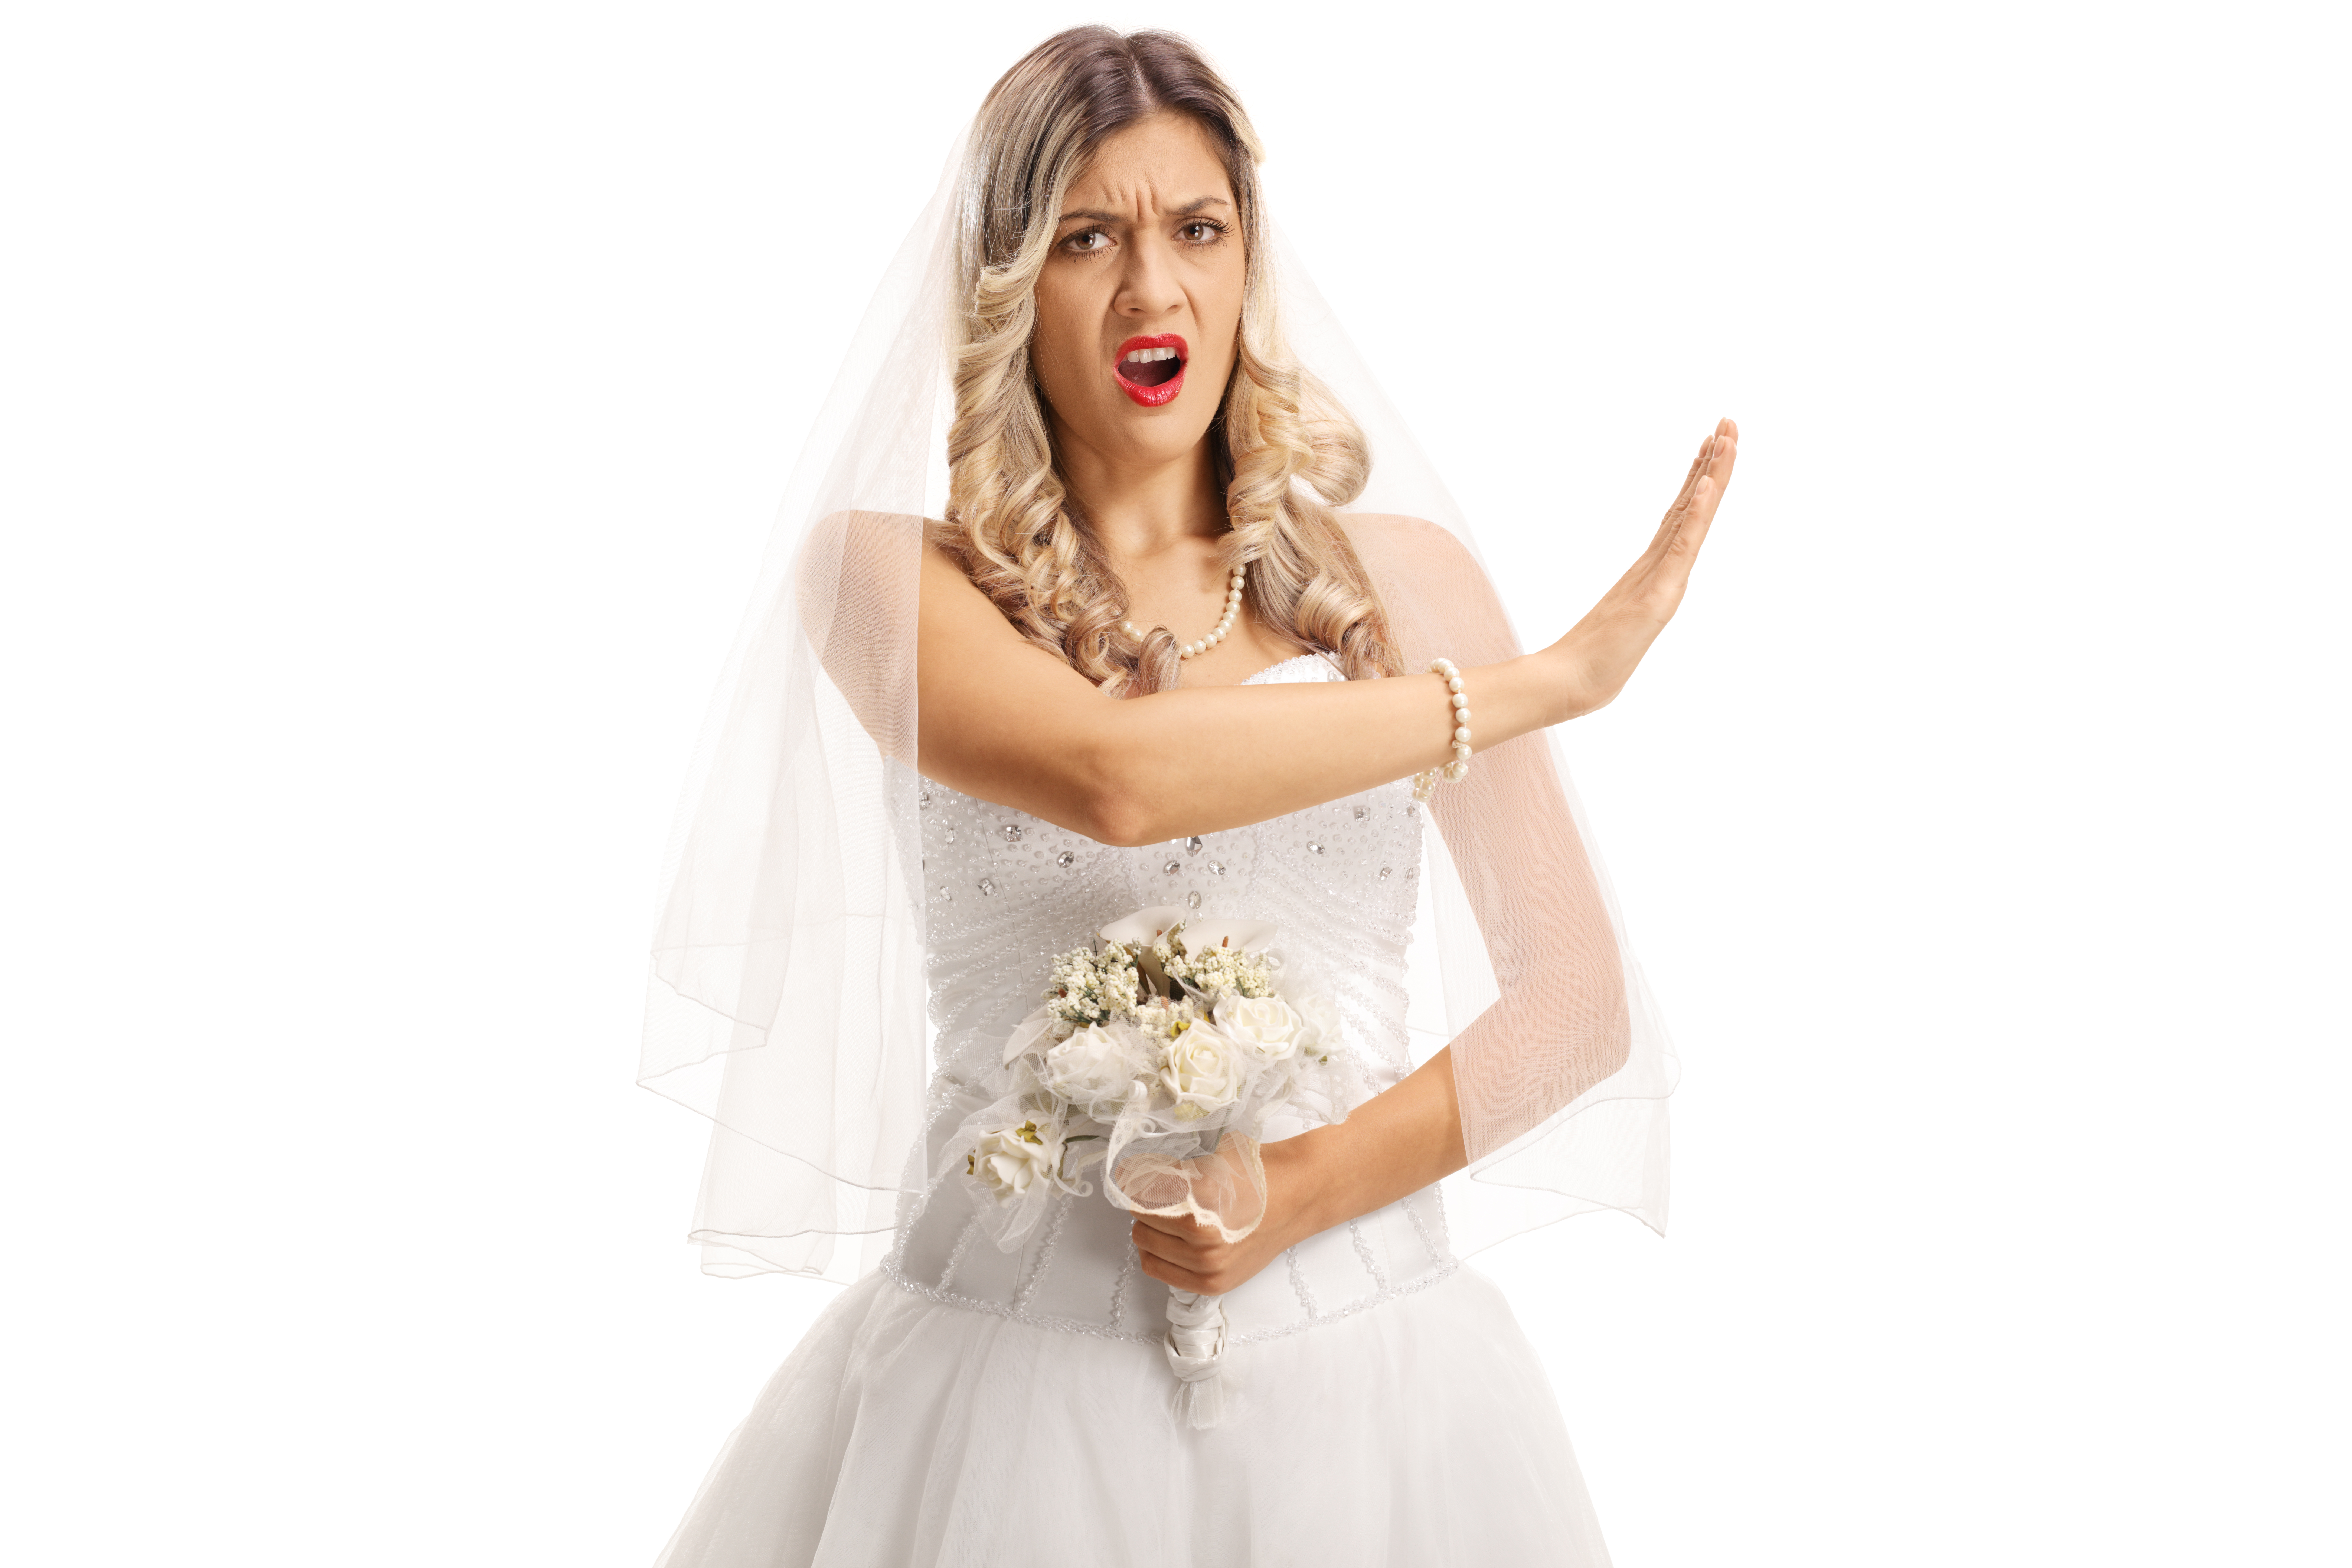 Eine wütende Braut in ihrer Hochzeitskleidung gestikuliert mit ihrer Hand | Quelle: Shutterstock